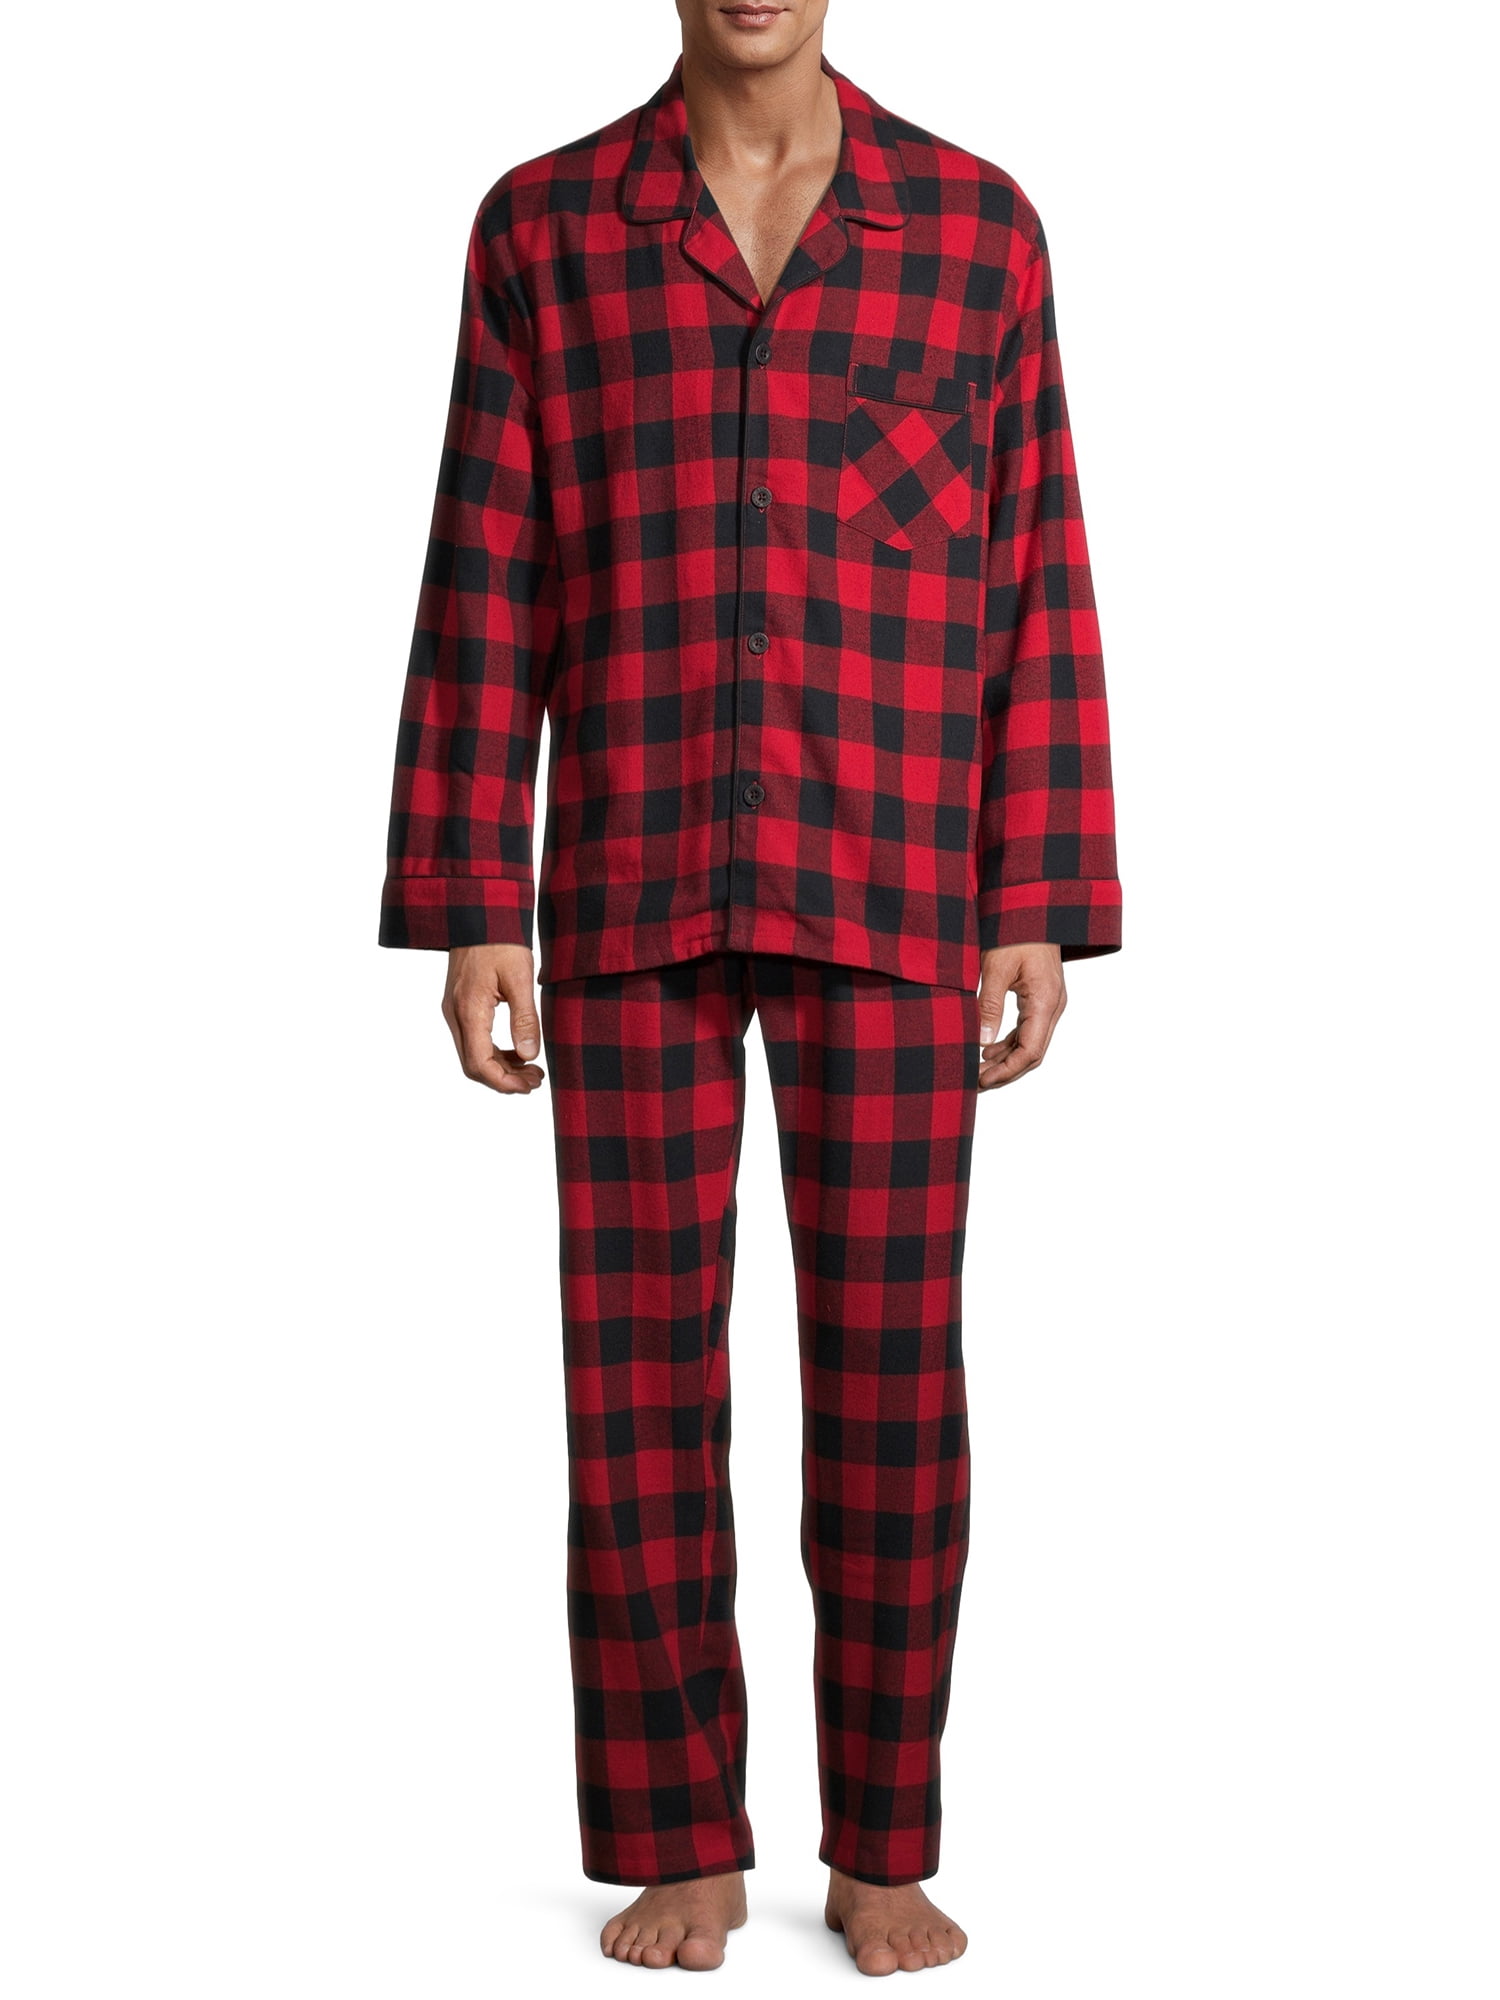 Hanes Men's and Big Men's 100% Cotton Flannel Pajama Set 